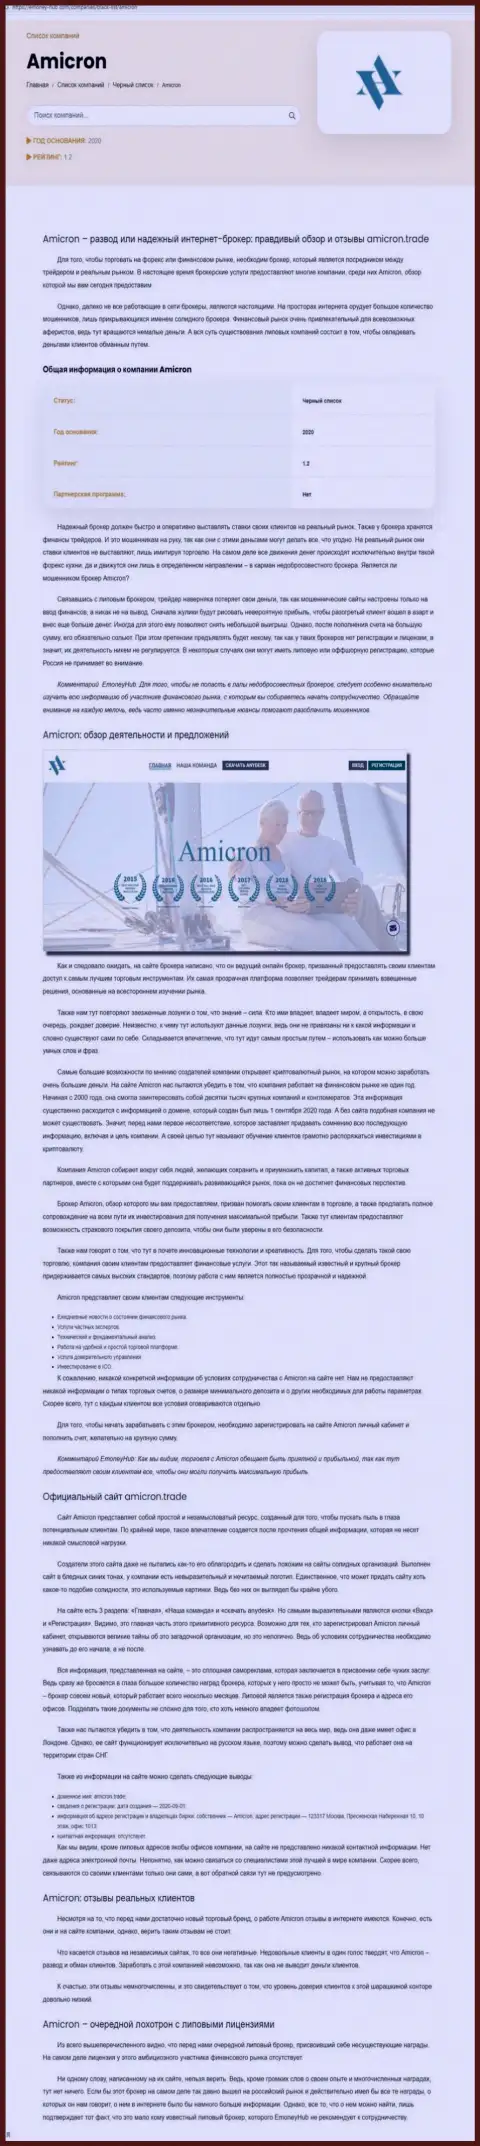 Amicron - это нахальный развод своих клиентов (обзор противозаконных действий)